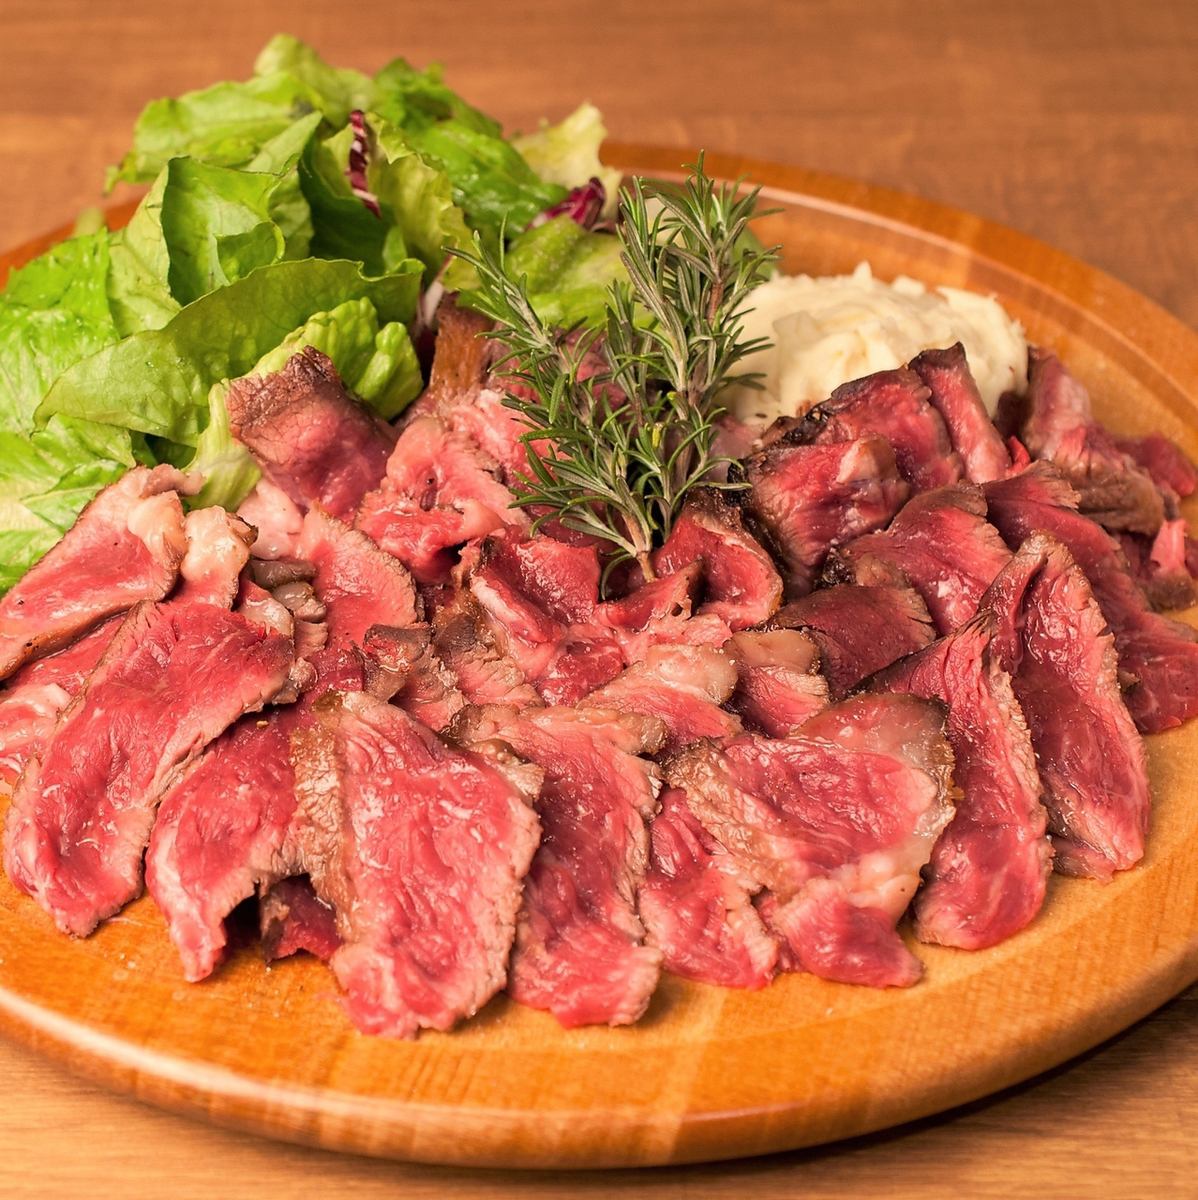 【熟成肉の専門店】ルビー色に輝く熟成肉を存分にお楽しみ下さい